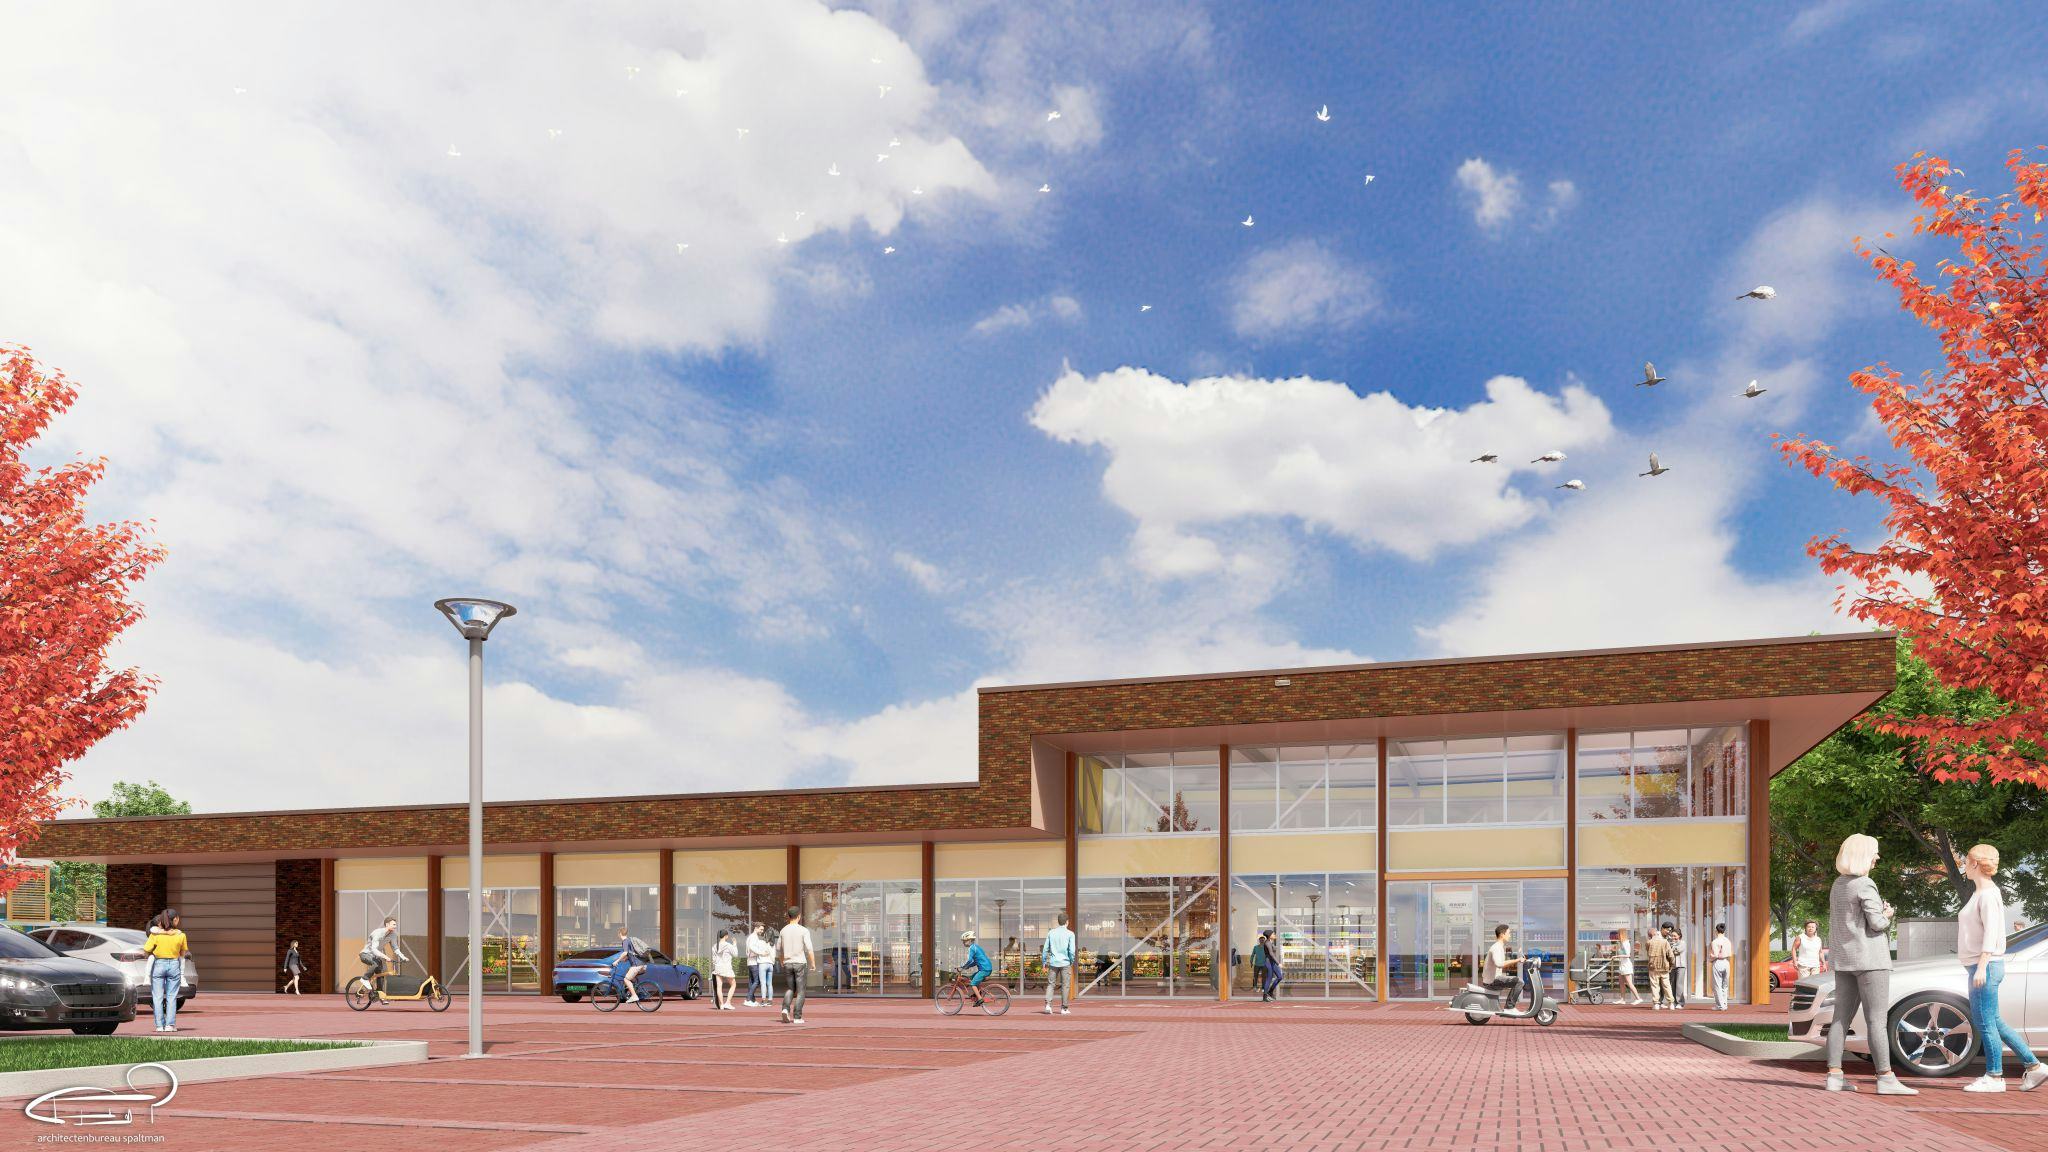 Projectontwikkelaar Bun bouwt een 2000 vierkante meter grote supermarkt in Eelderwolde. Foto: LinkedIn Bun